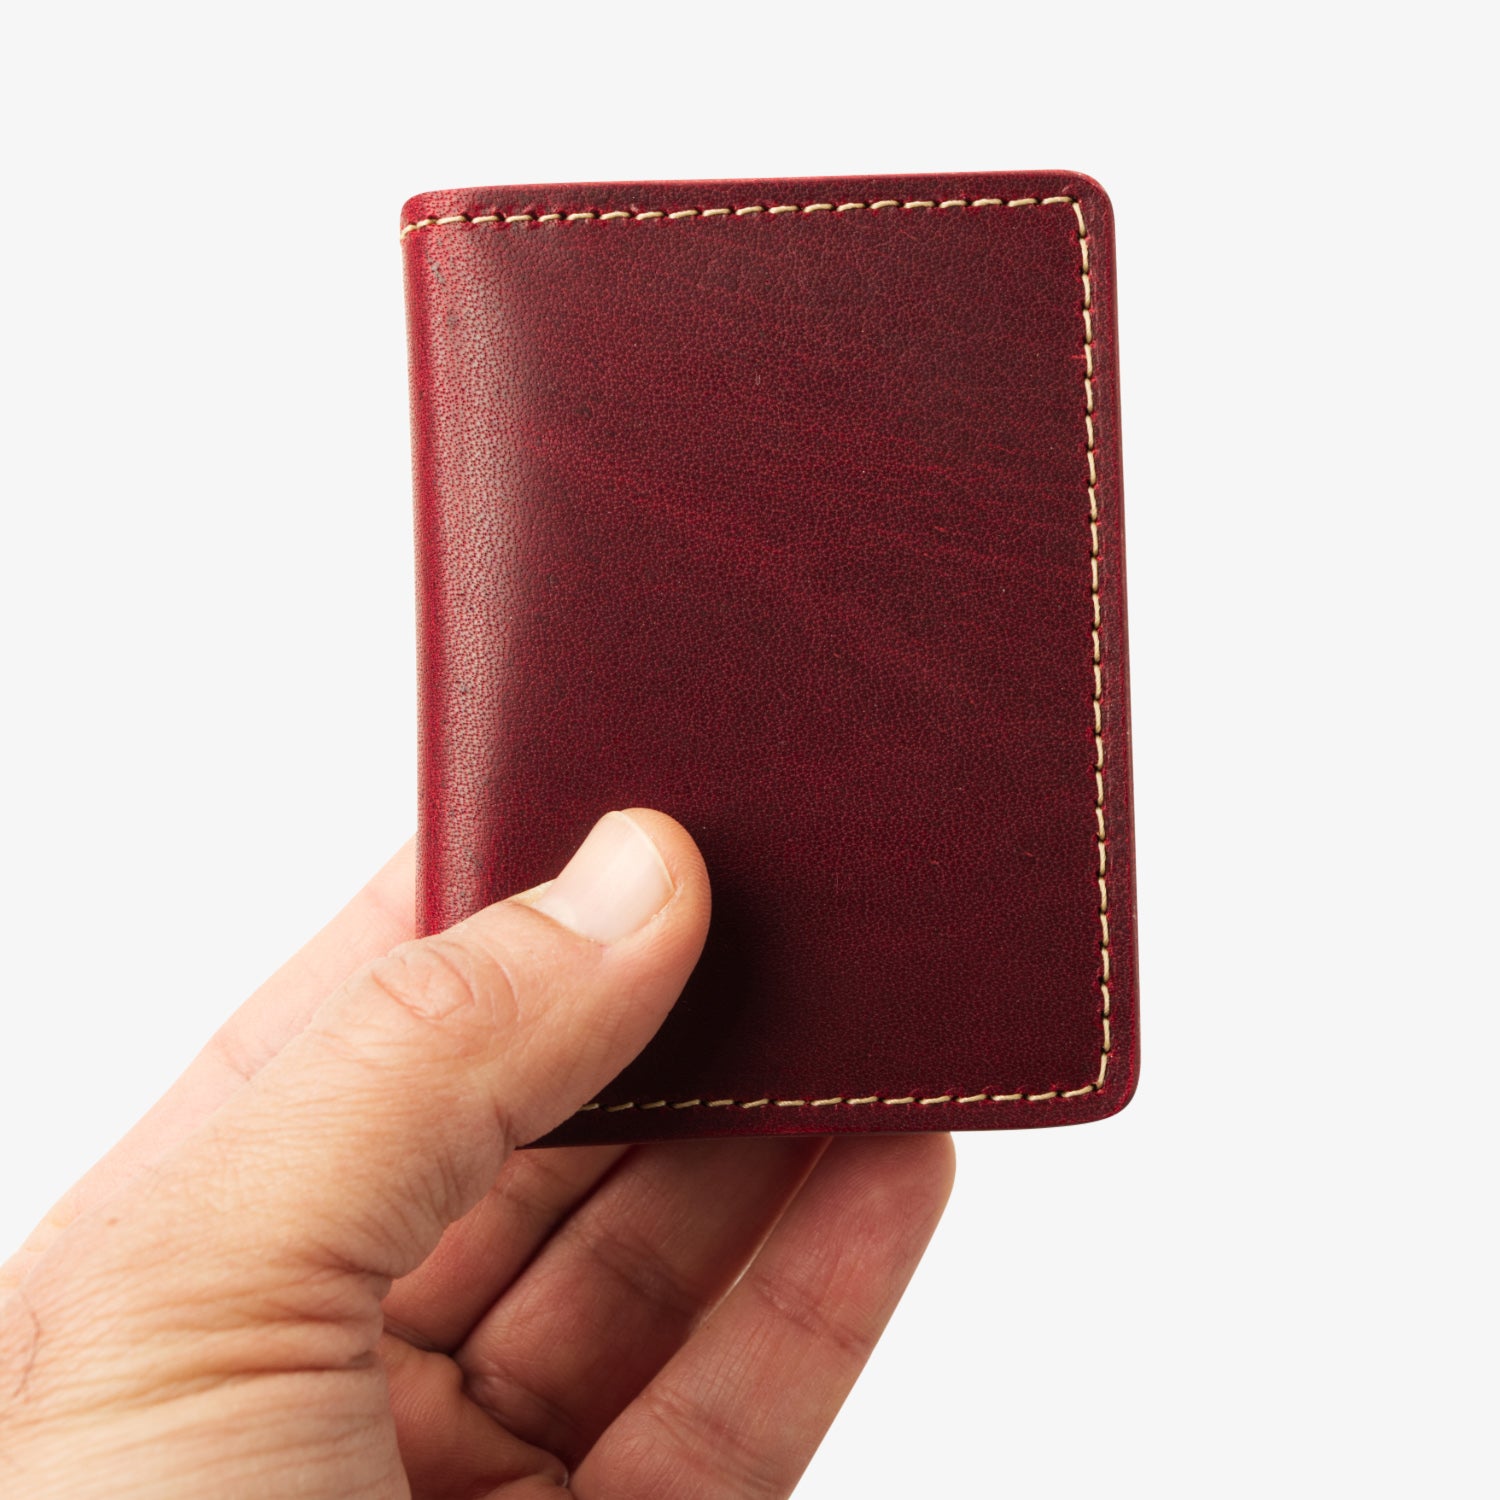 Olympia Bifold Wallet - Red/Tan – Coal Creek Leather